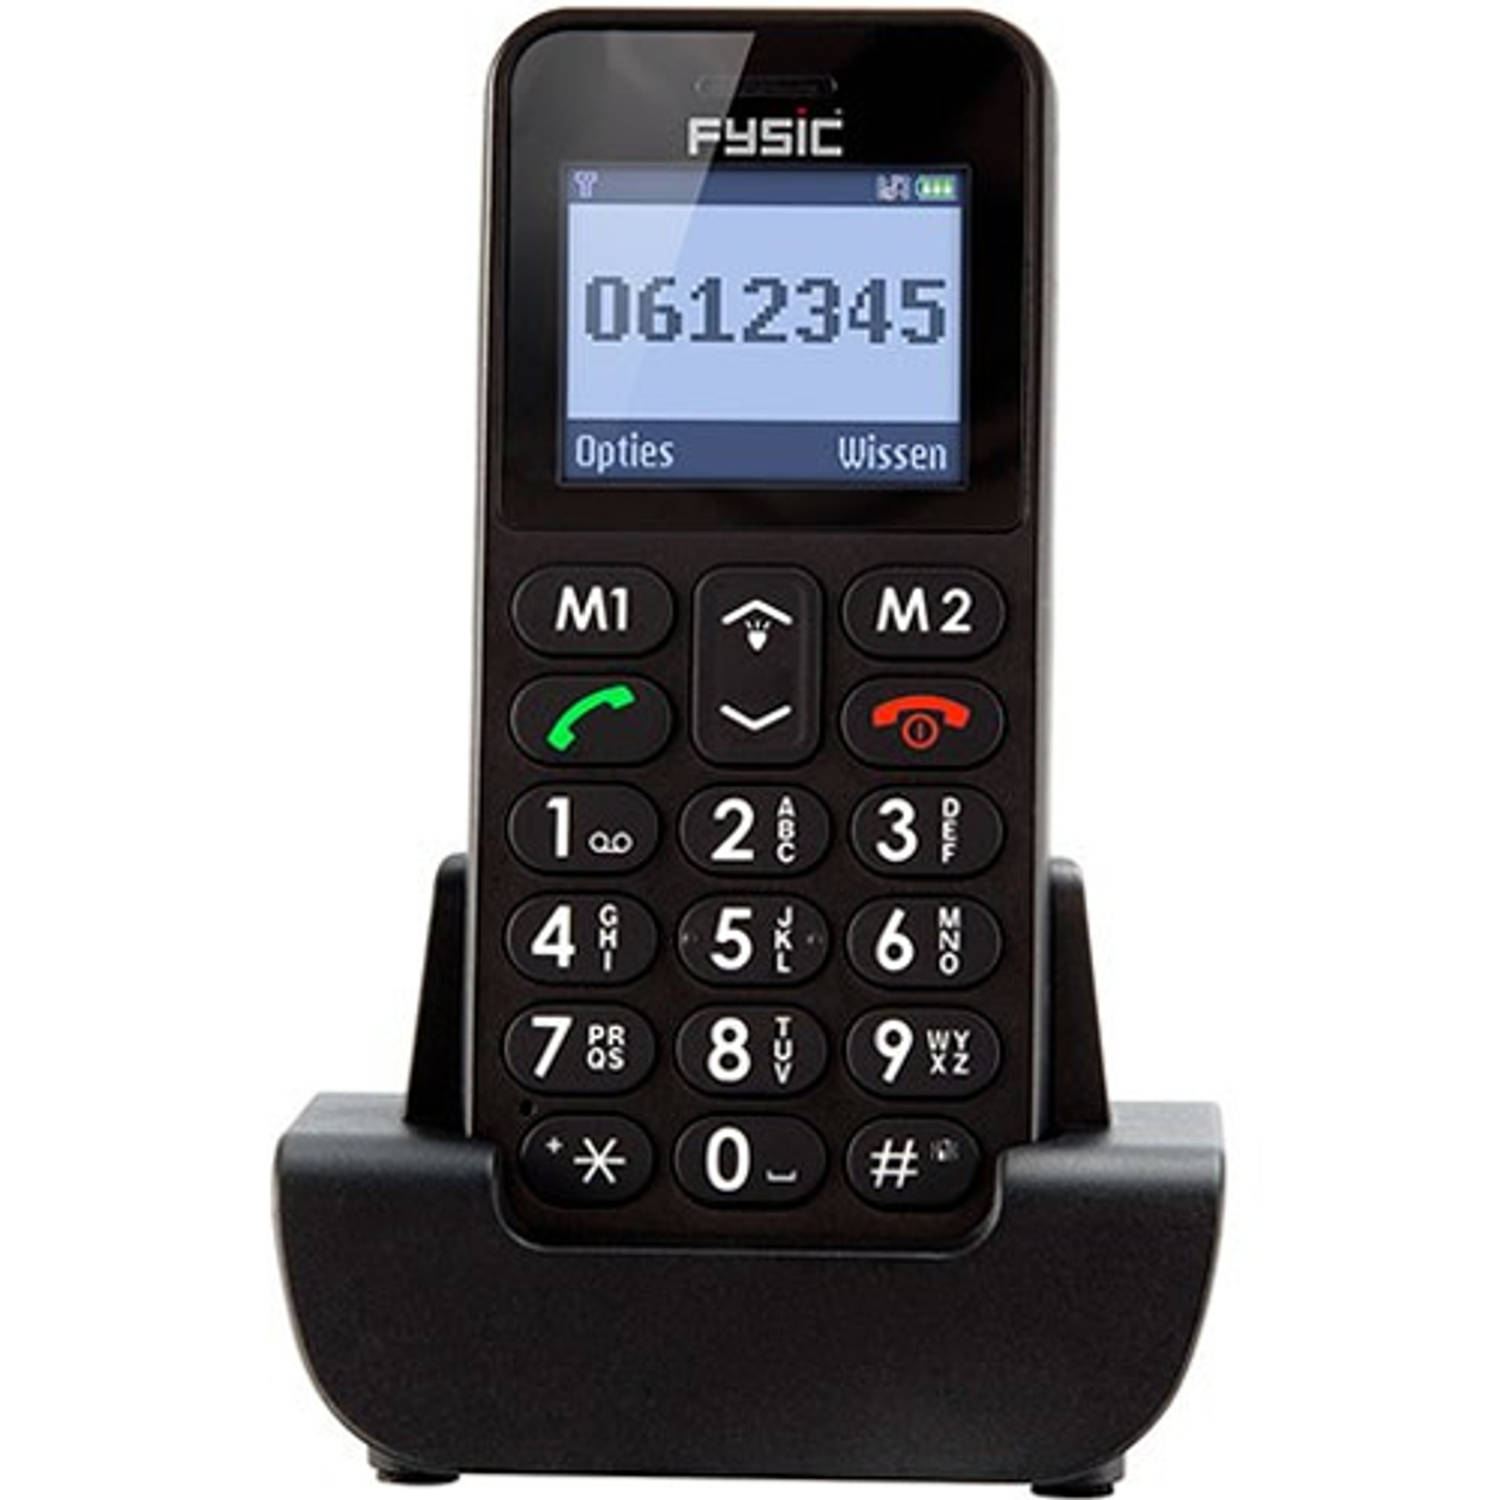 Fysic FM-6700 Senioren mobiele telefoon - SOS noodknop, grote toetsen en eenvoudig menu - Zwart